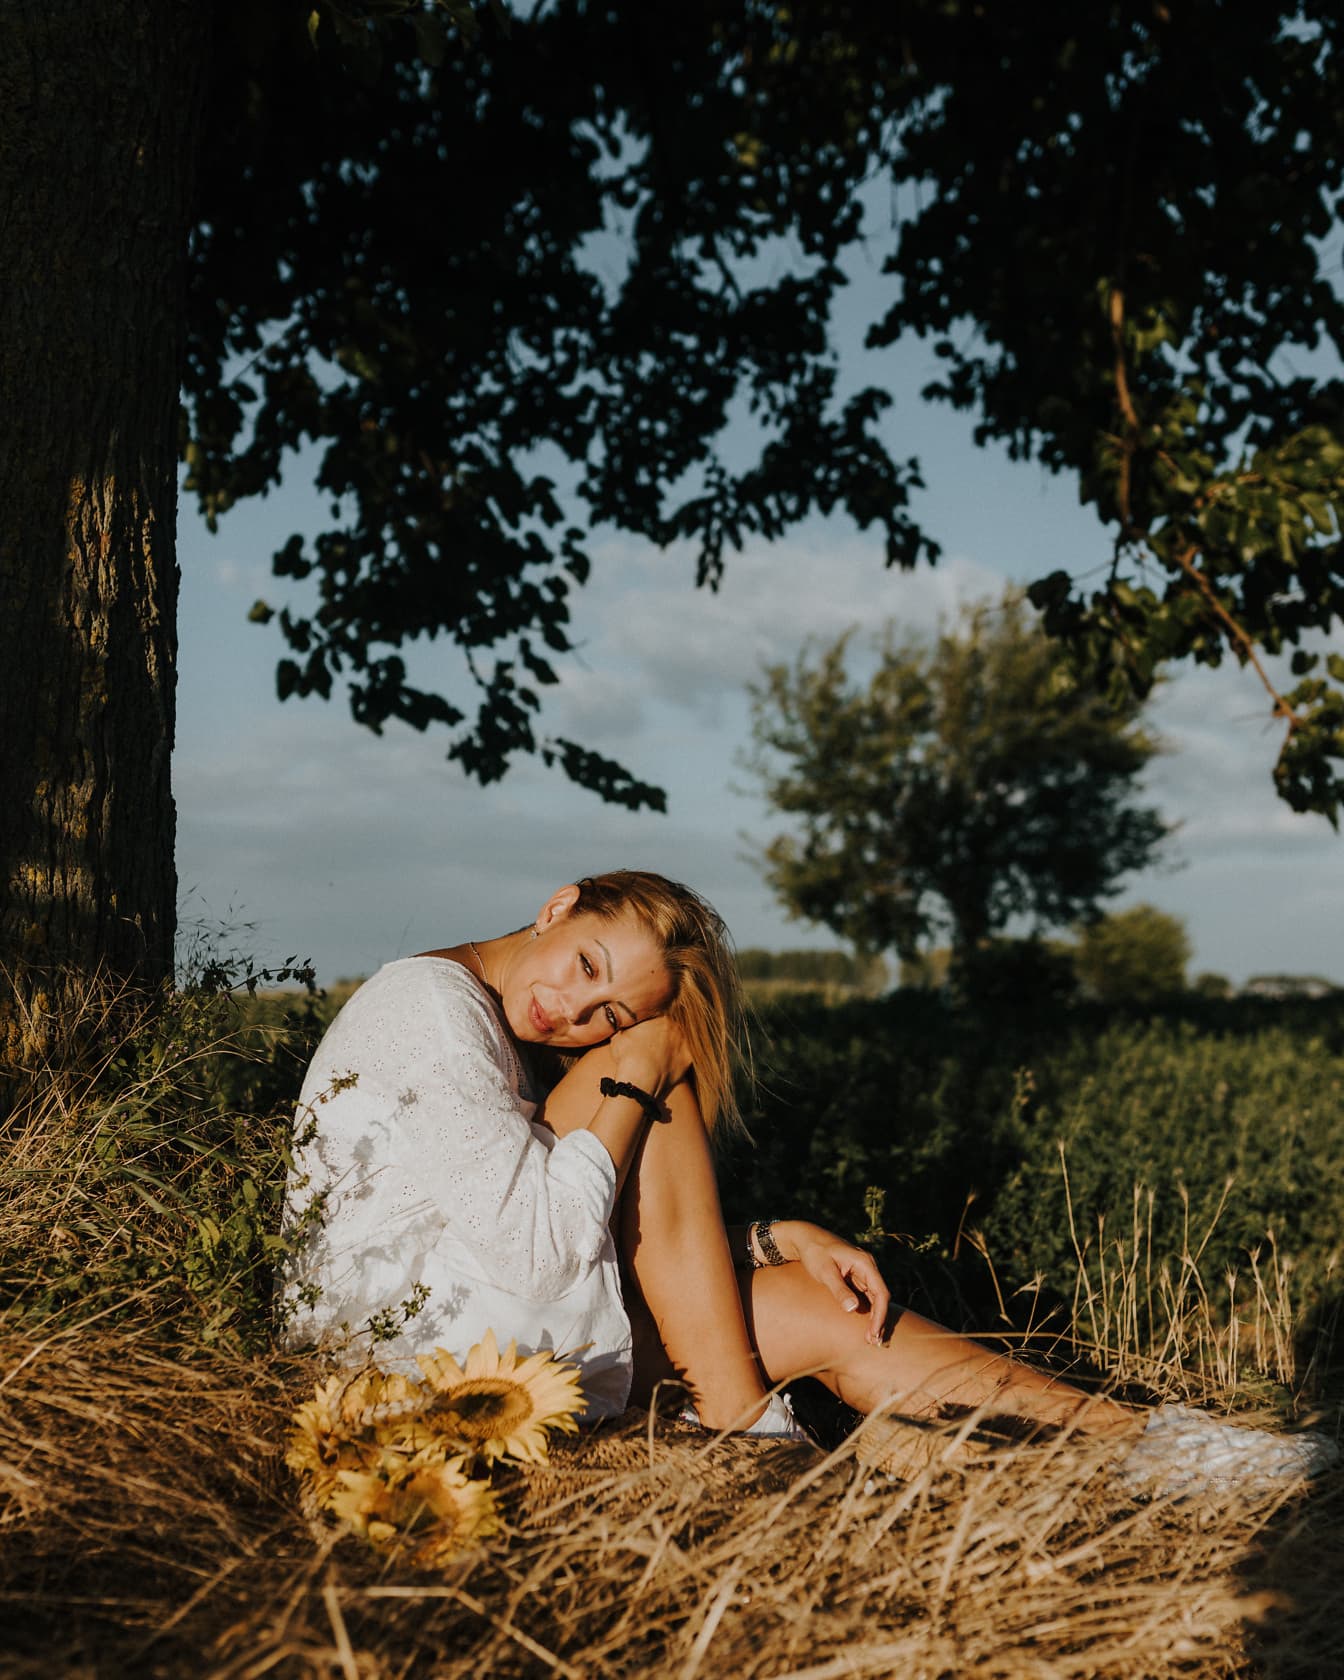 Upea blondi istuu maaseutuniityllä ja ottaa aurinkoa auringonlaskussa